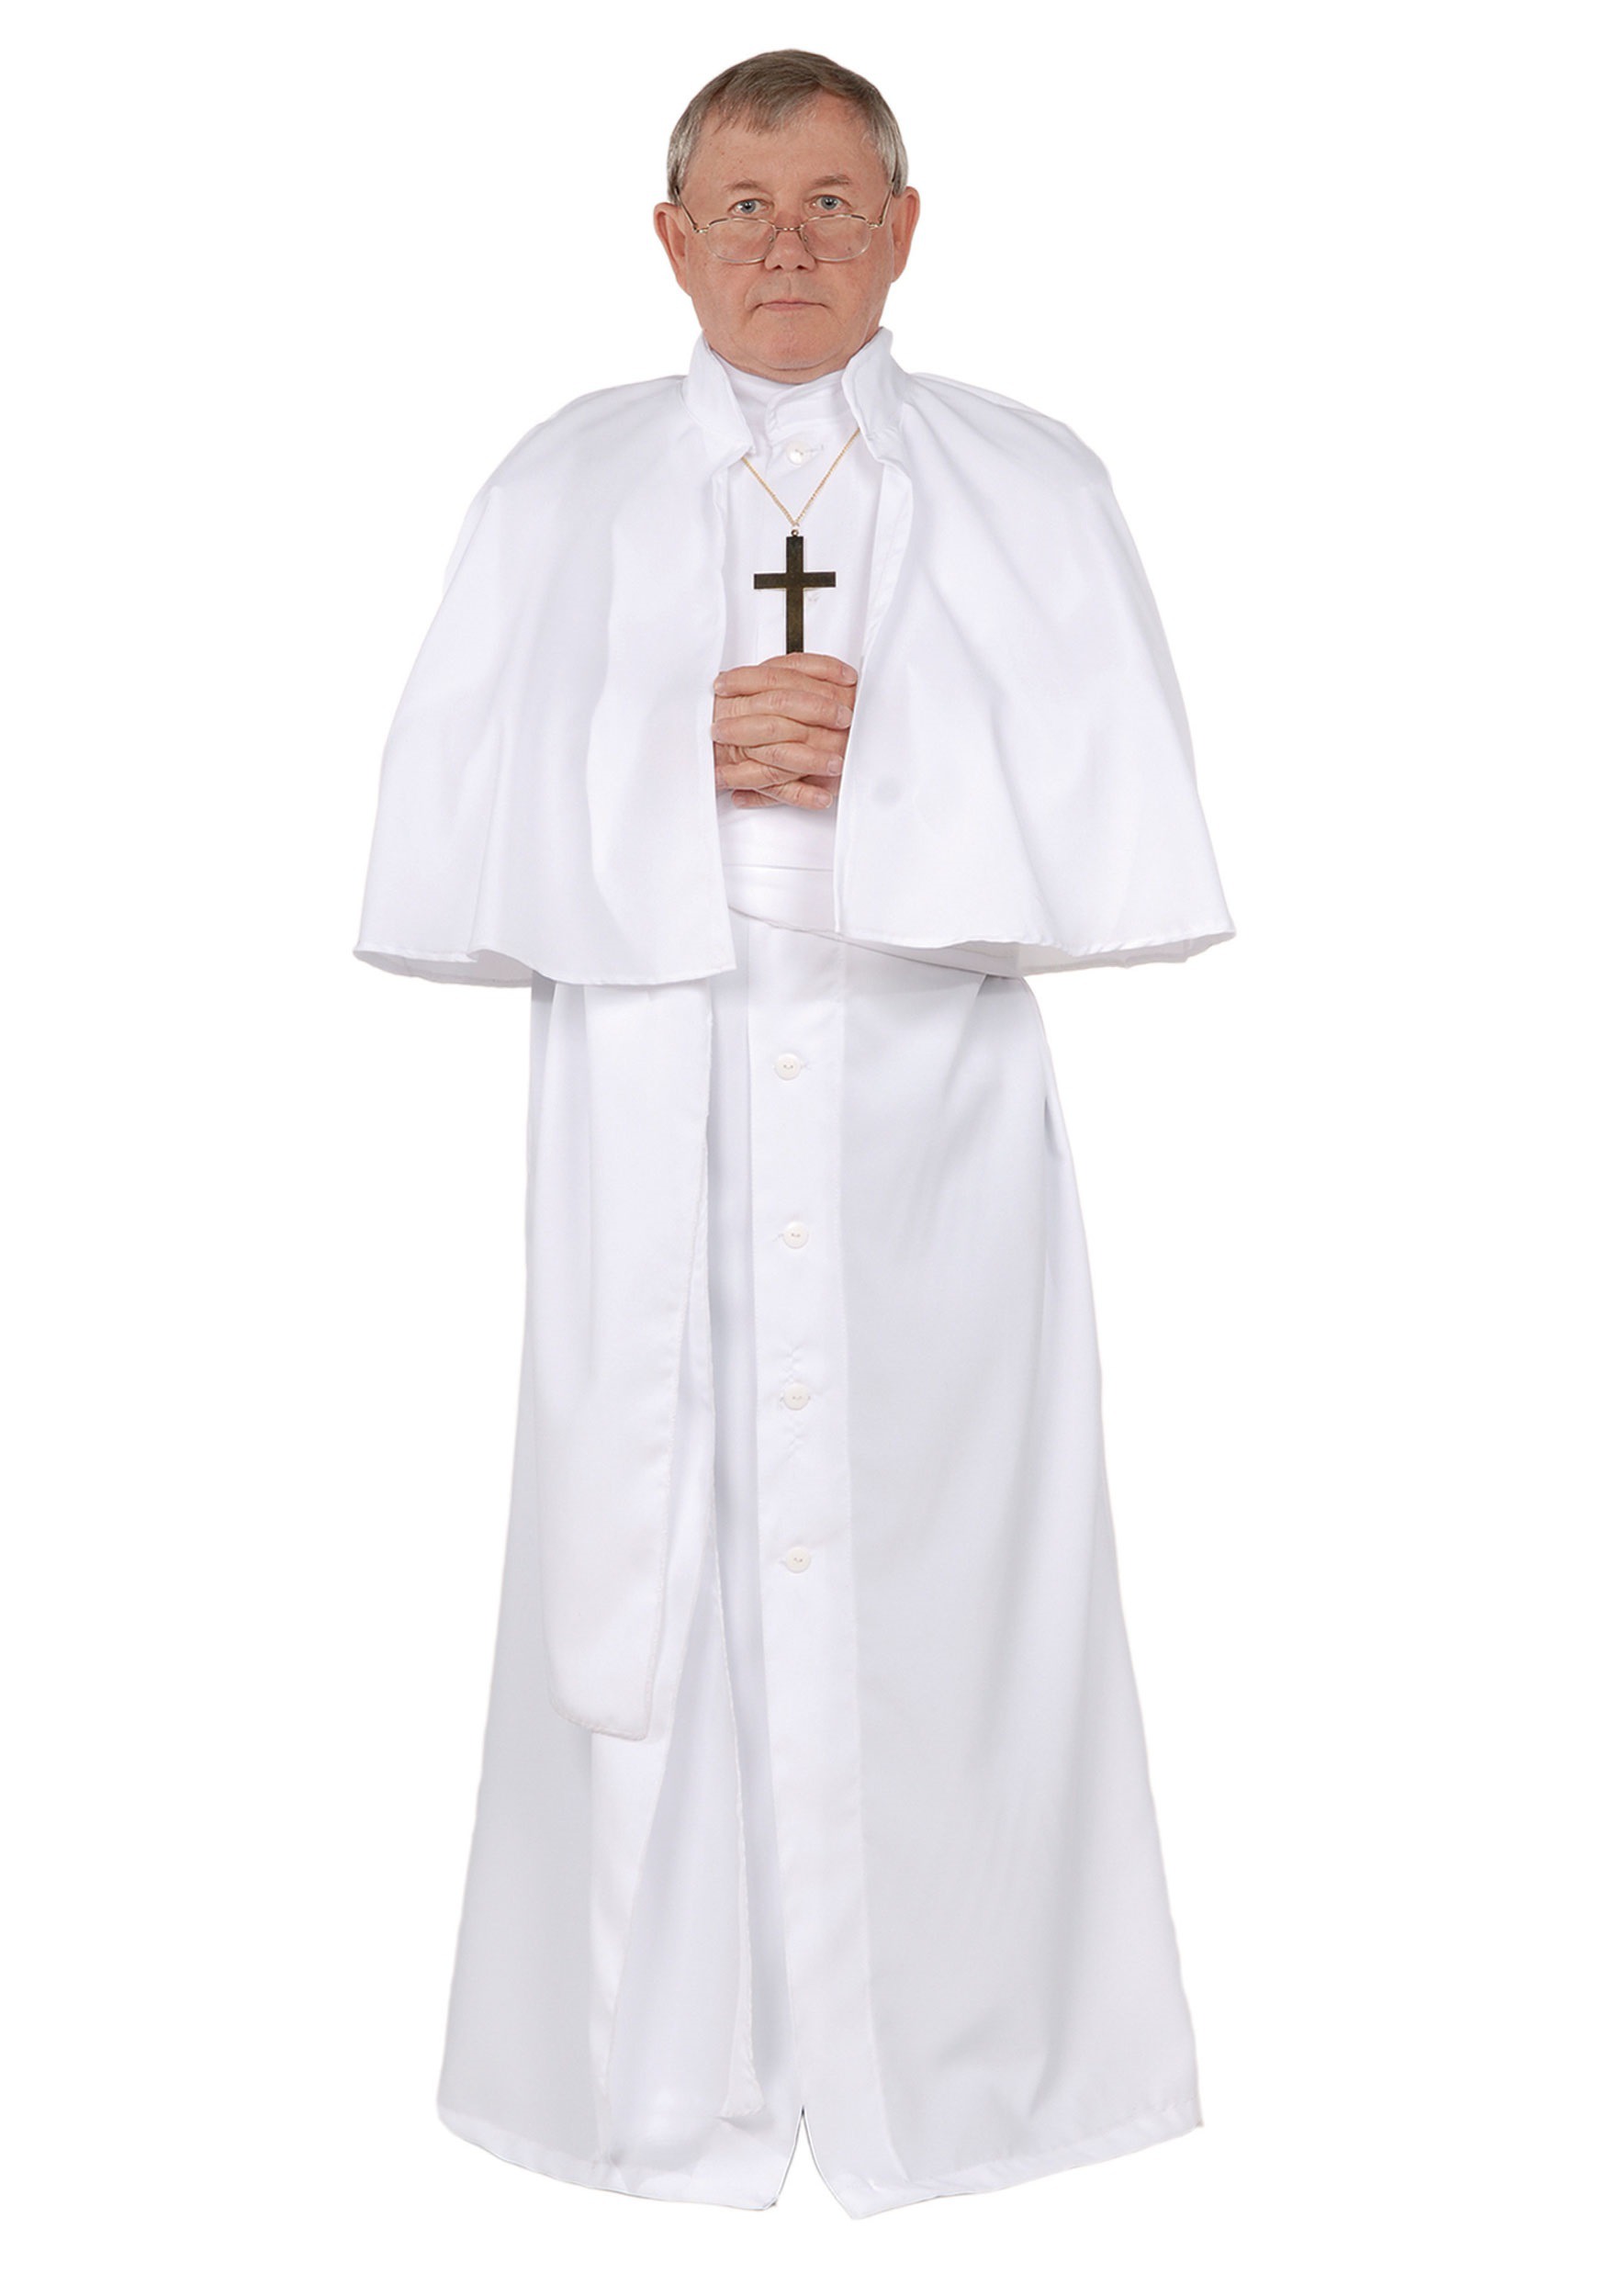 Men’s Pope Costume